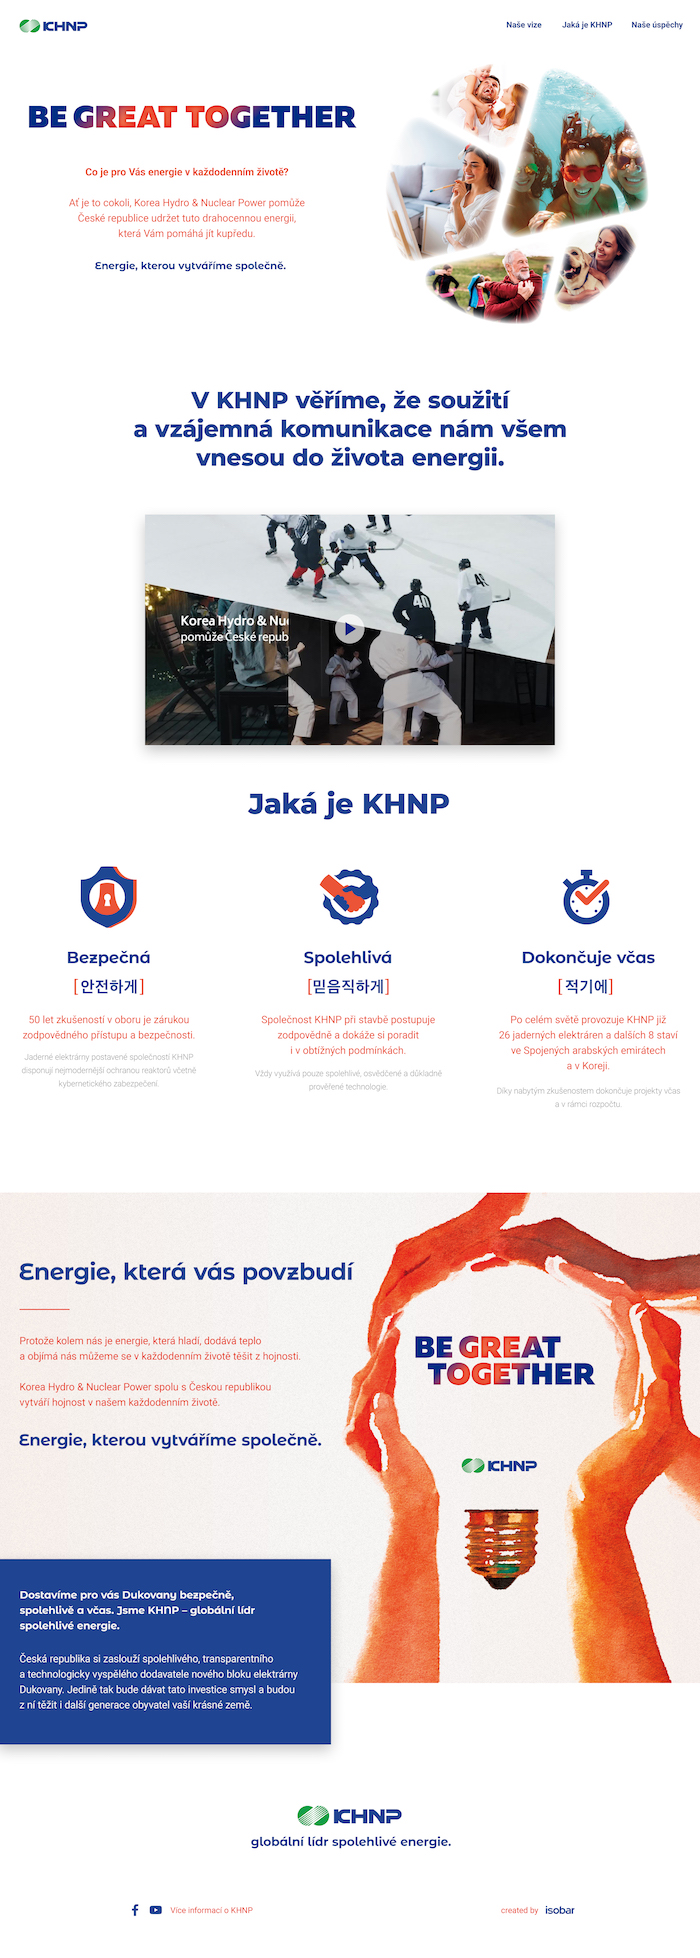 Ukázka nového designu webu KHNP, zdroj: KHNP